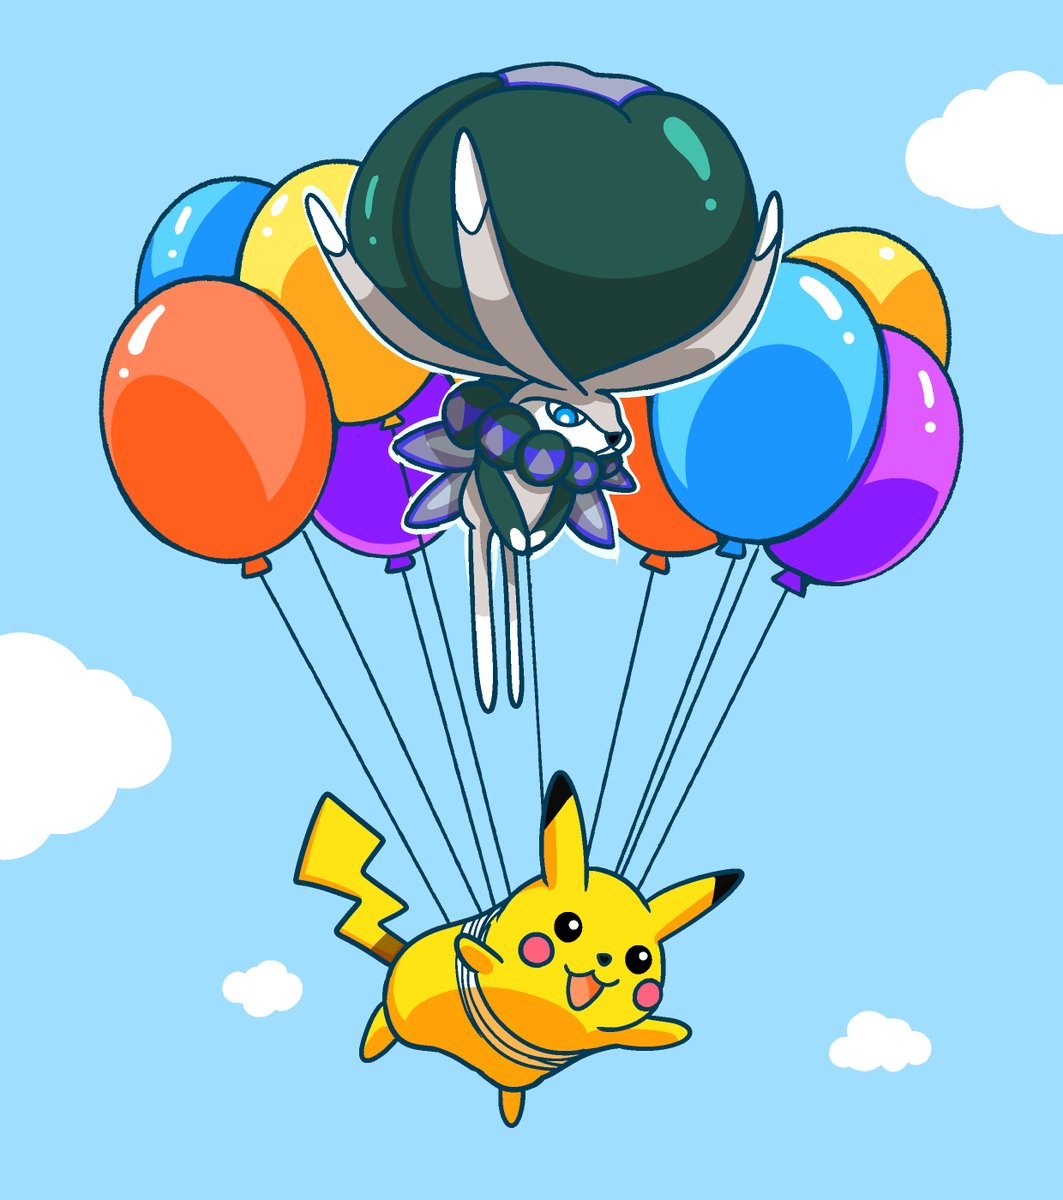 ポケモン 空飛ぶ ピカチュウ と バドレックス ポケモン剣盾 Pokemon 漫画 フキダシコットン 1日1枚 のイラスト